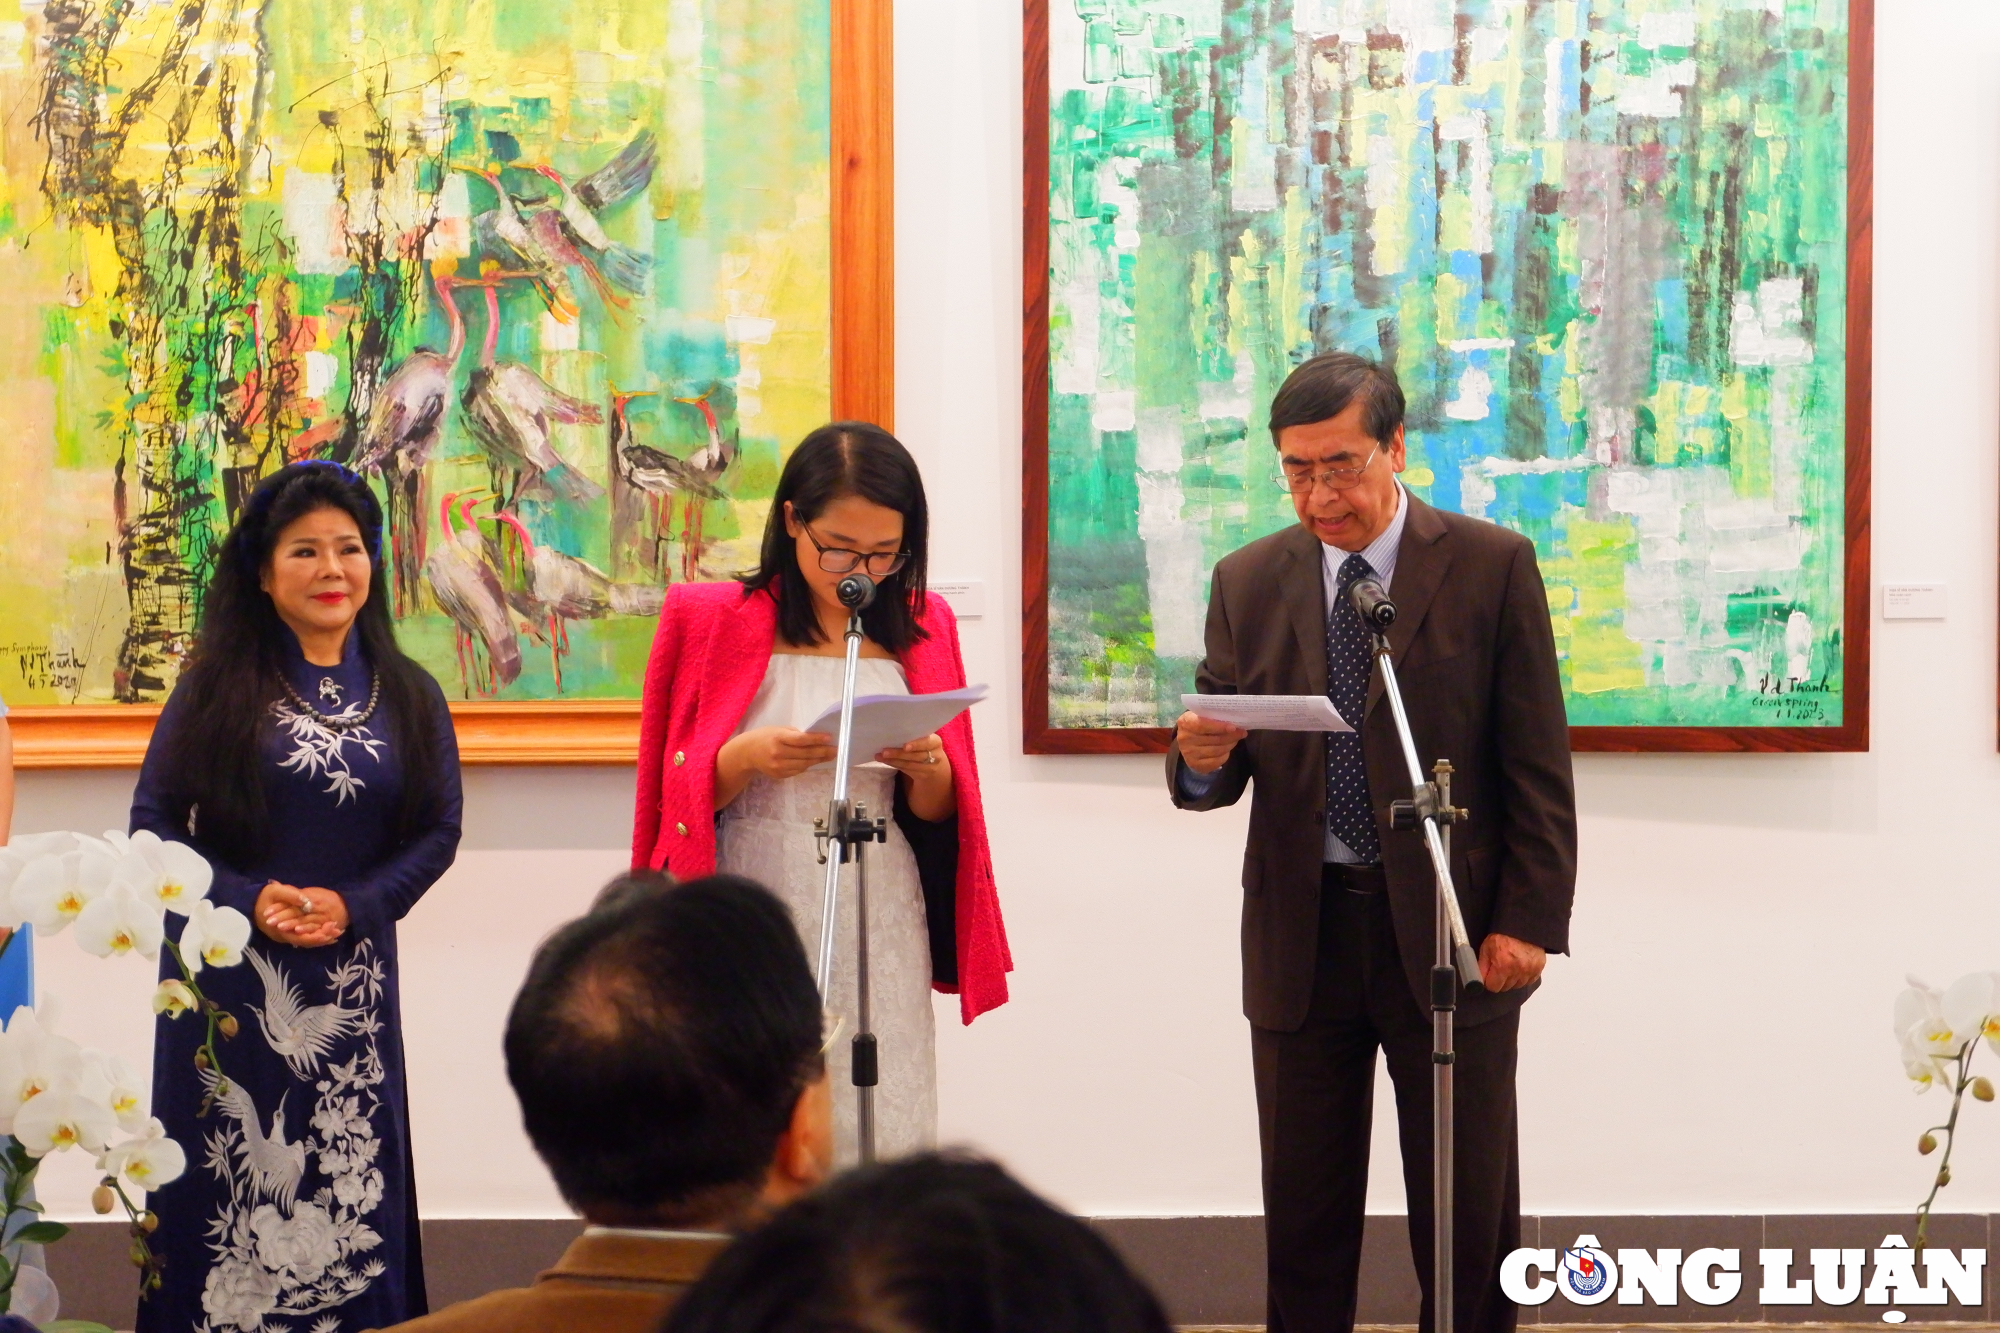 Đại sứ Nguyễn Phú Bình, nguyên Thứ trưởng Bộ Ngoại giao, Chủ tịch Hội liên lạc với người Việt ở nước ngoài phát biểu tại triển lãm của họa sĩ Văn Dương Thành.